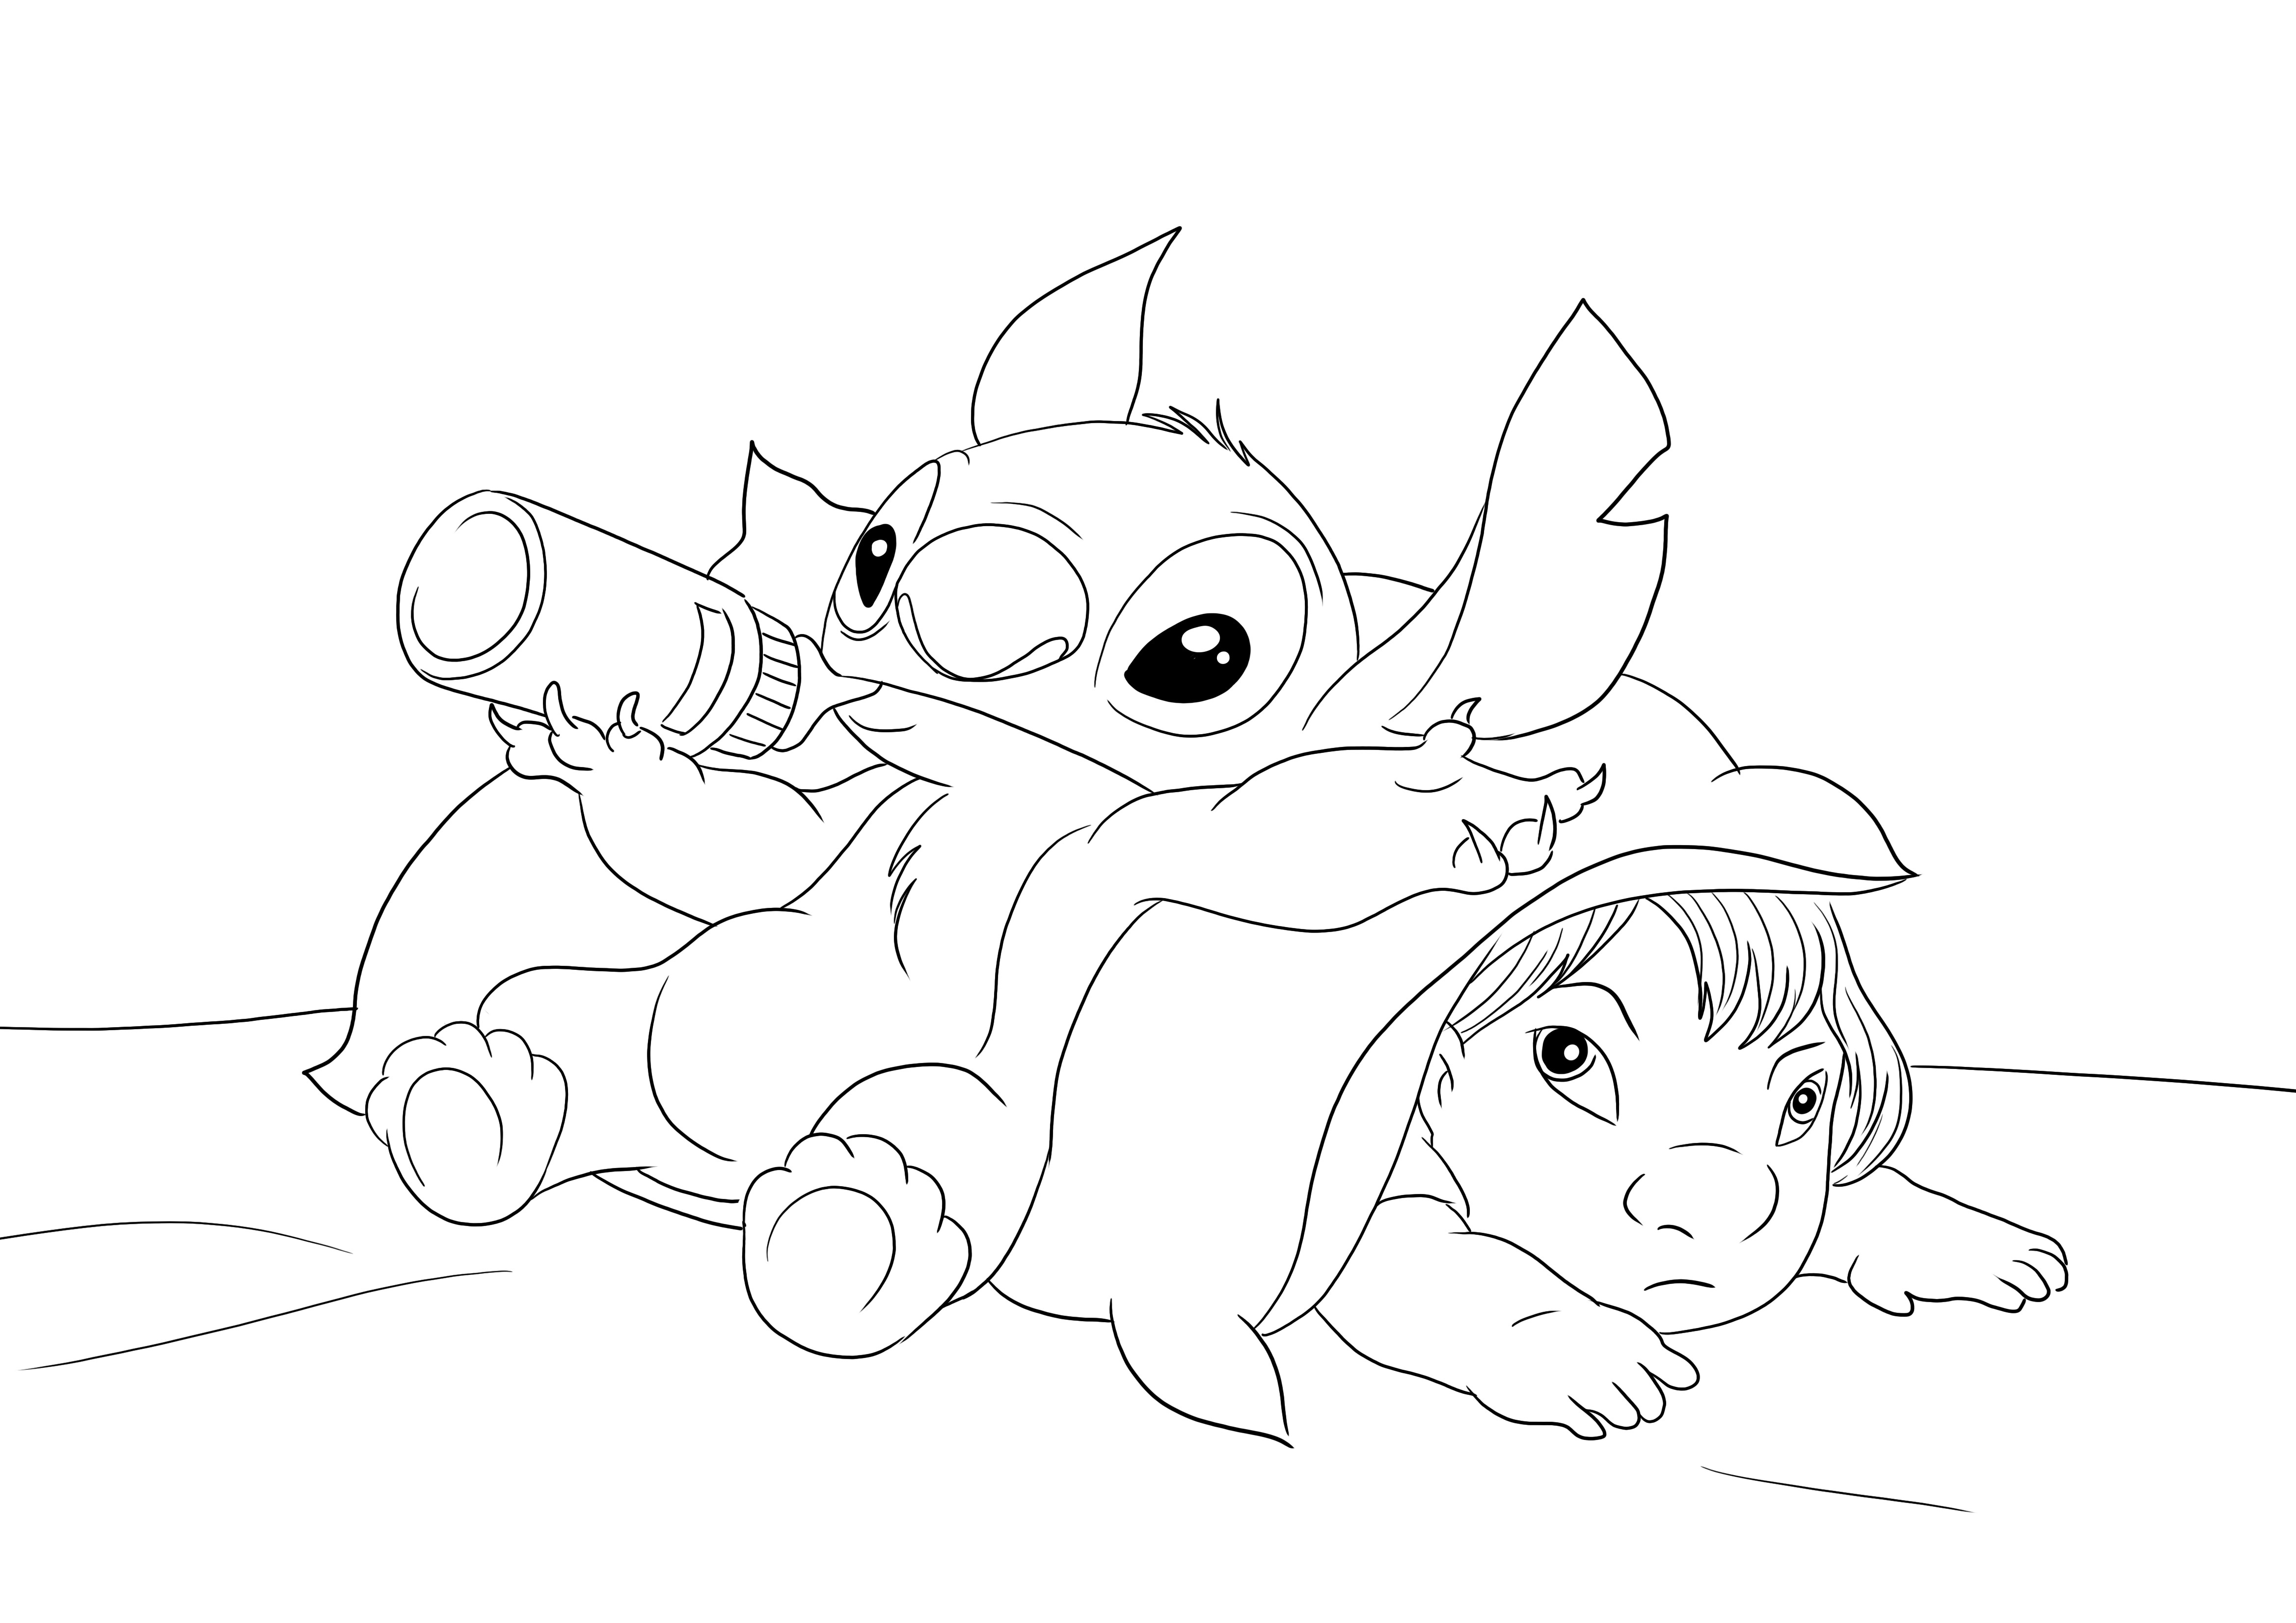 Baby Stitch e Lilo da scaricare gratis e colorare per i bambini